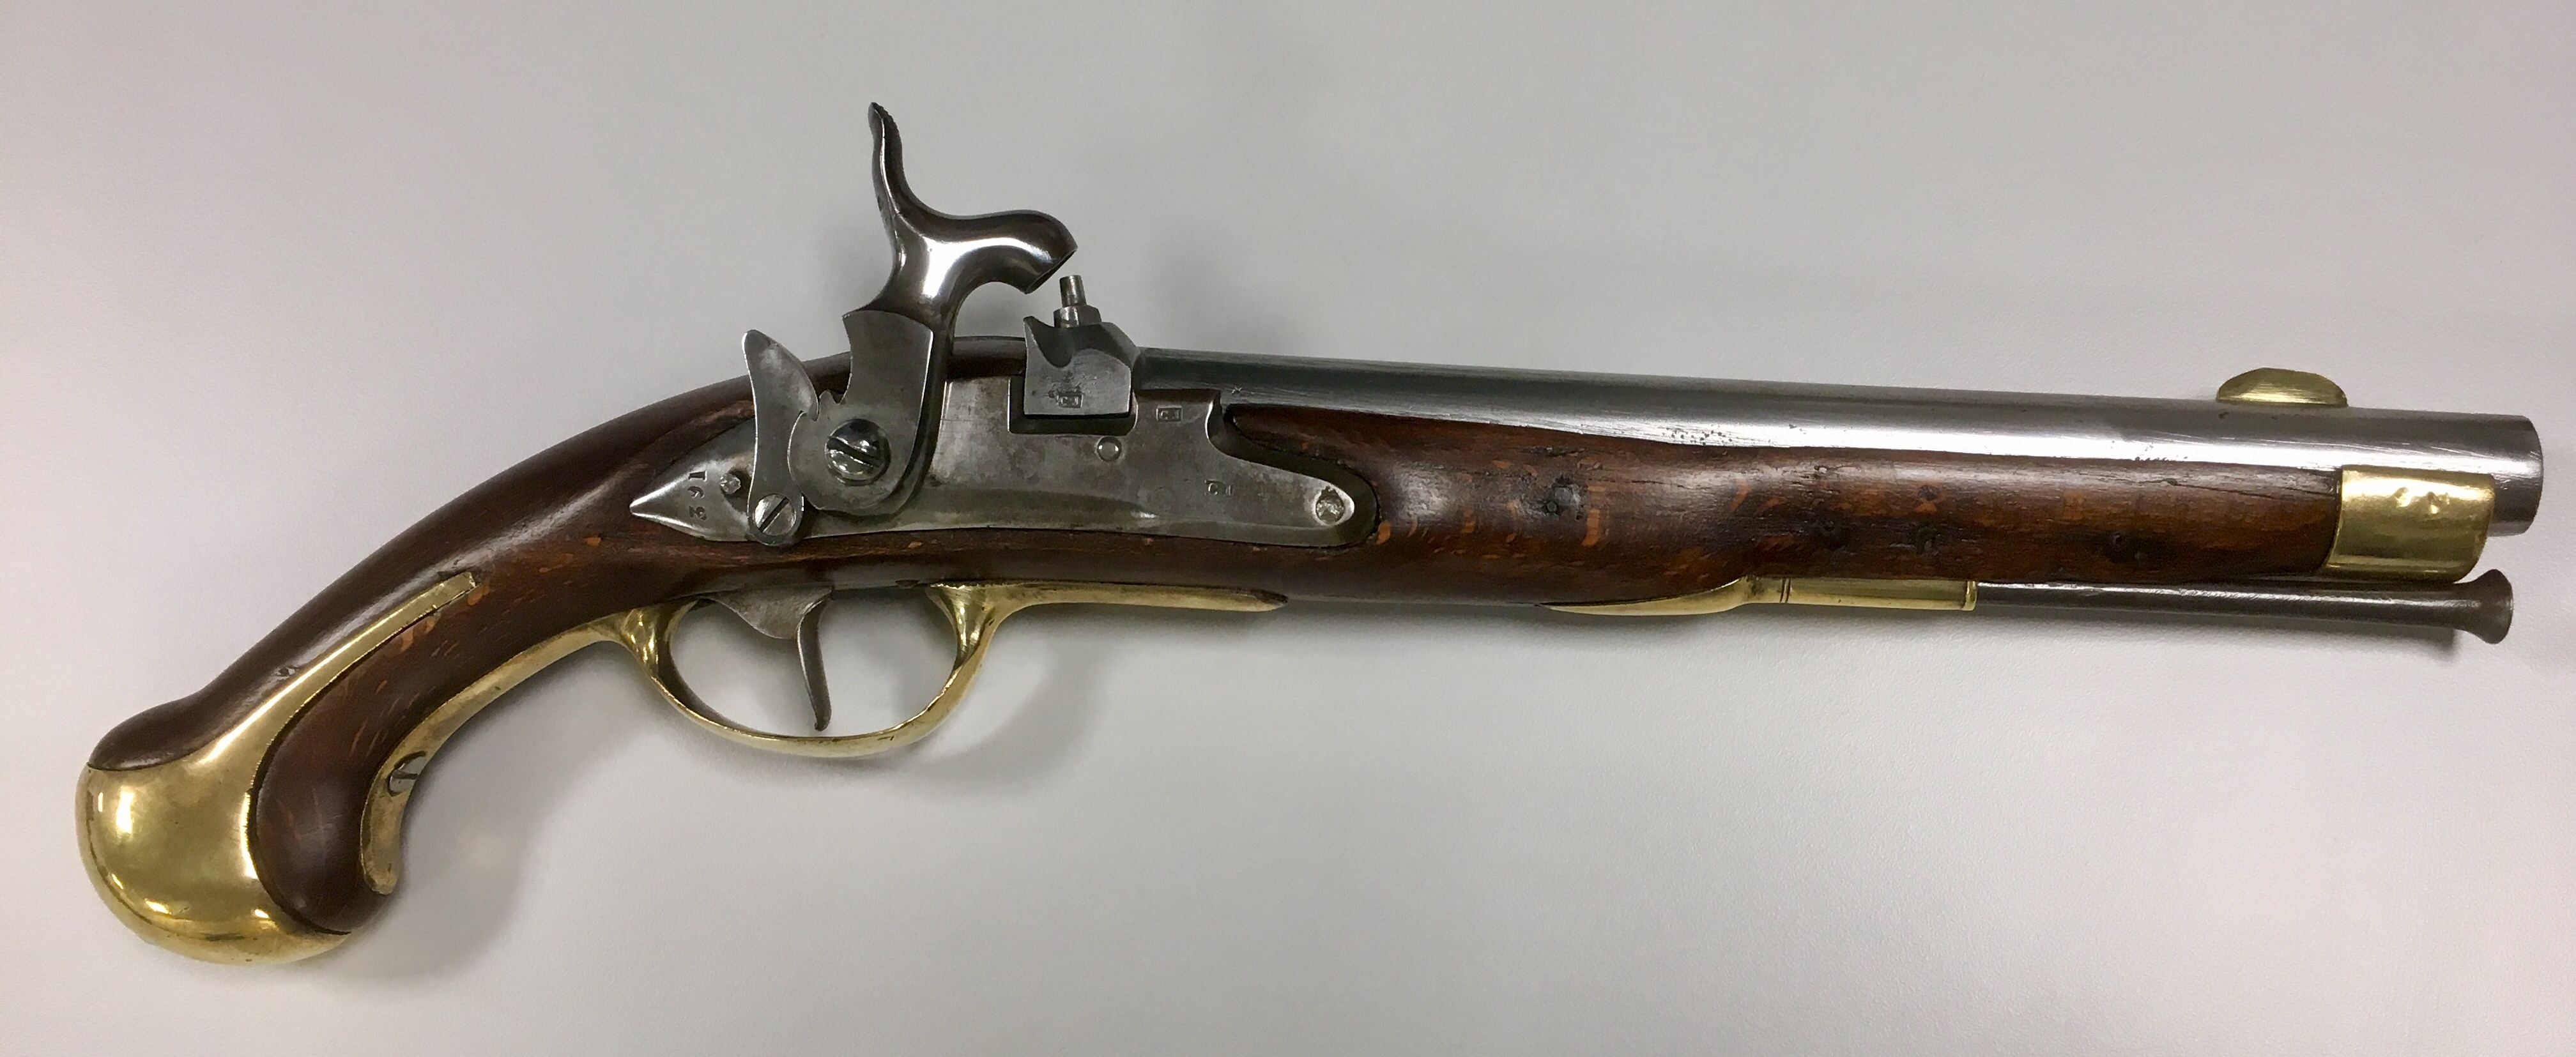 ./guns/pistol/bilder/Pistol-Dansk-Norsk-1772-1839-Marine-162-1.jpg